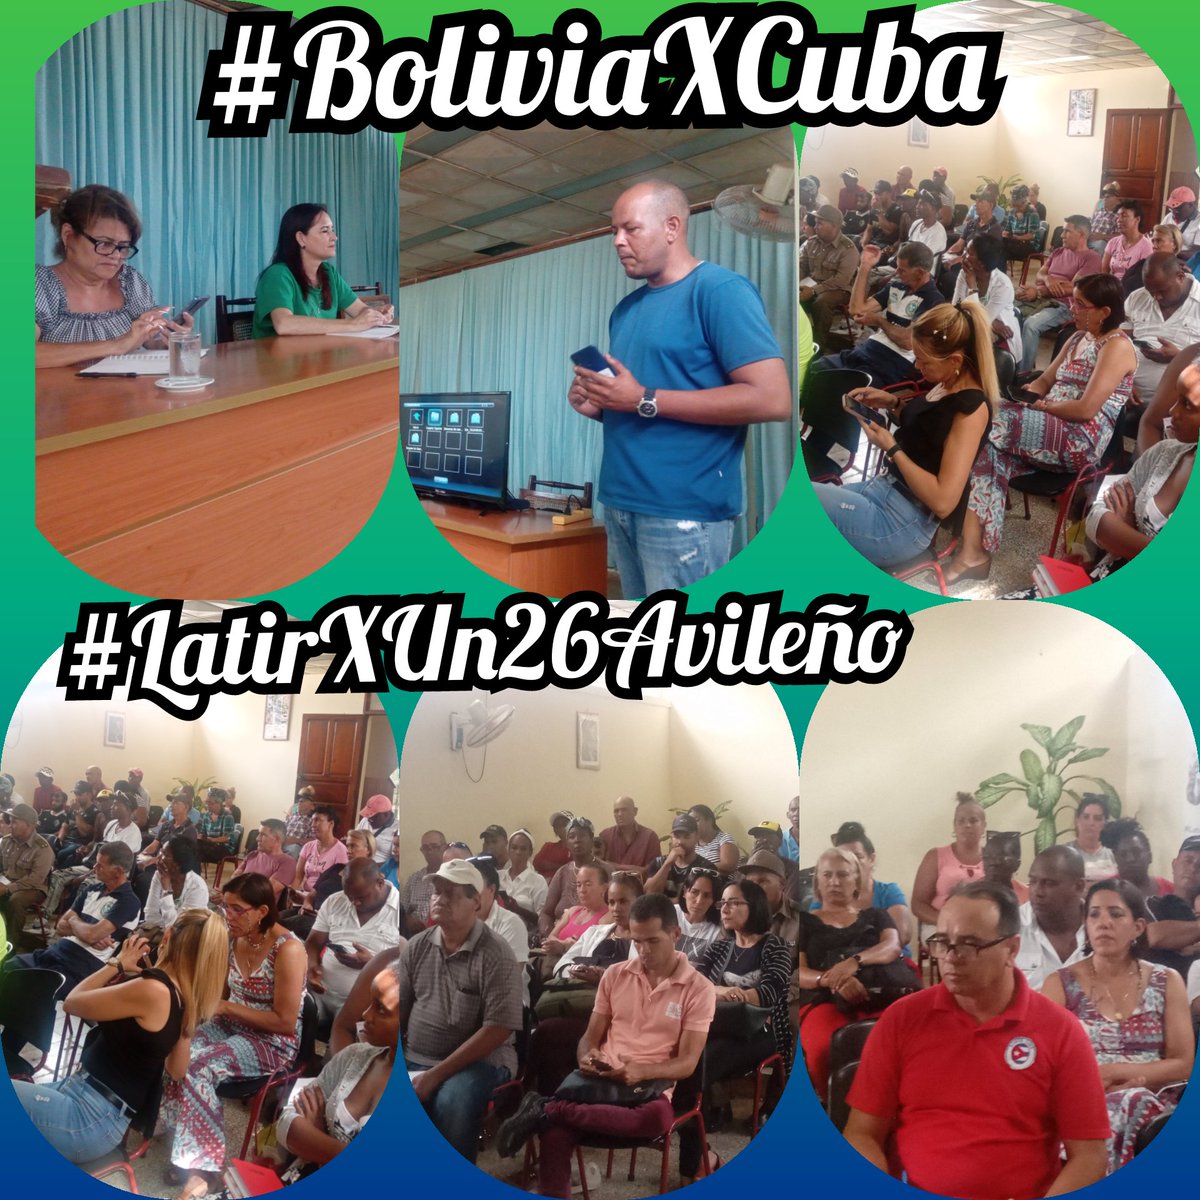 Participamos en el Municipio Bolivia en la preparación sobre las redes públicas y digitales con @NoemiMilianRos1 y @TelegrafistaC. Presidió este encuentro @OmarGarcaO51127 #BoliviaXCuba #LatirXUn26Avileño #Cuba